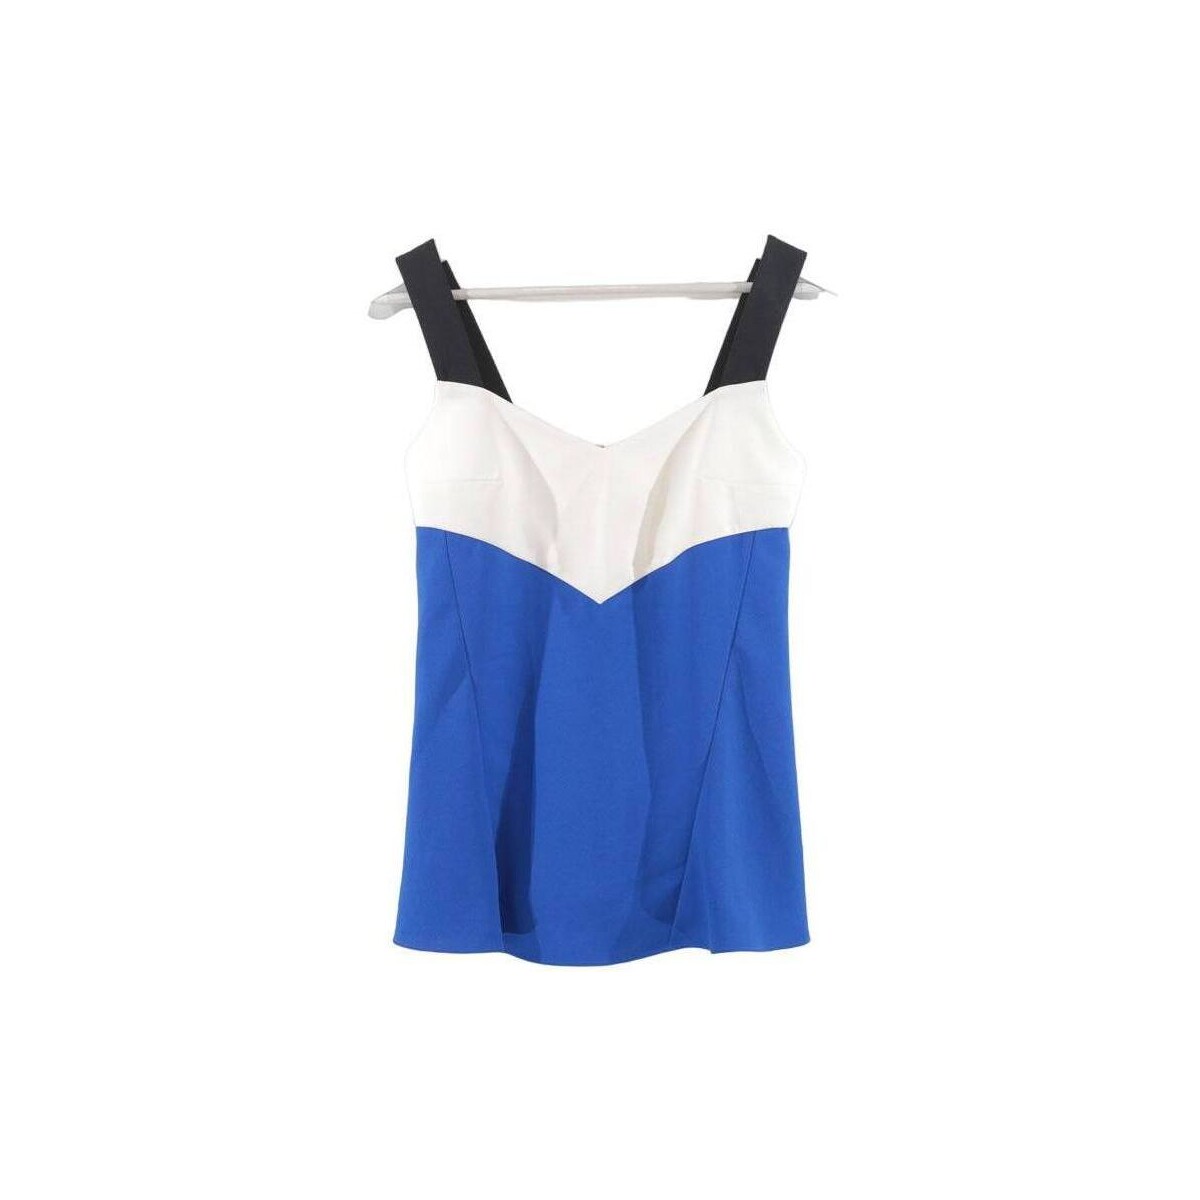 Vêtements Femme raise seam cotton shirt Top bleu Bleu